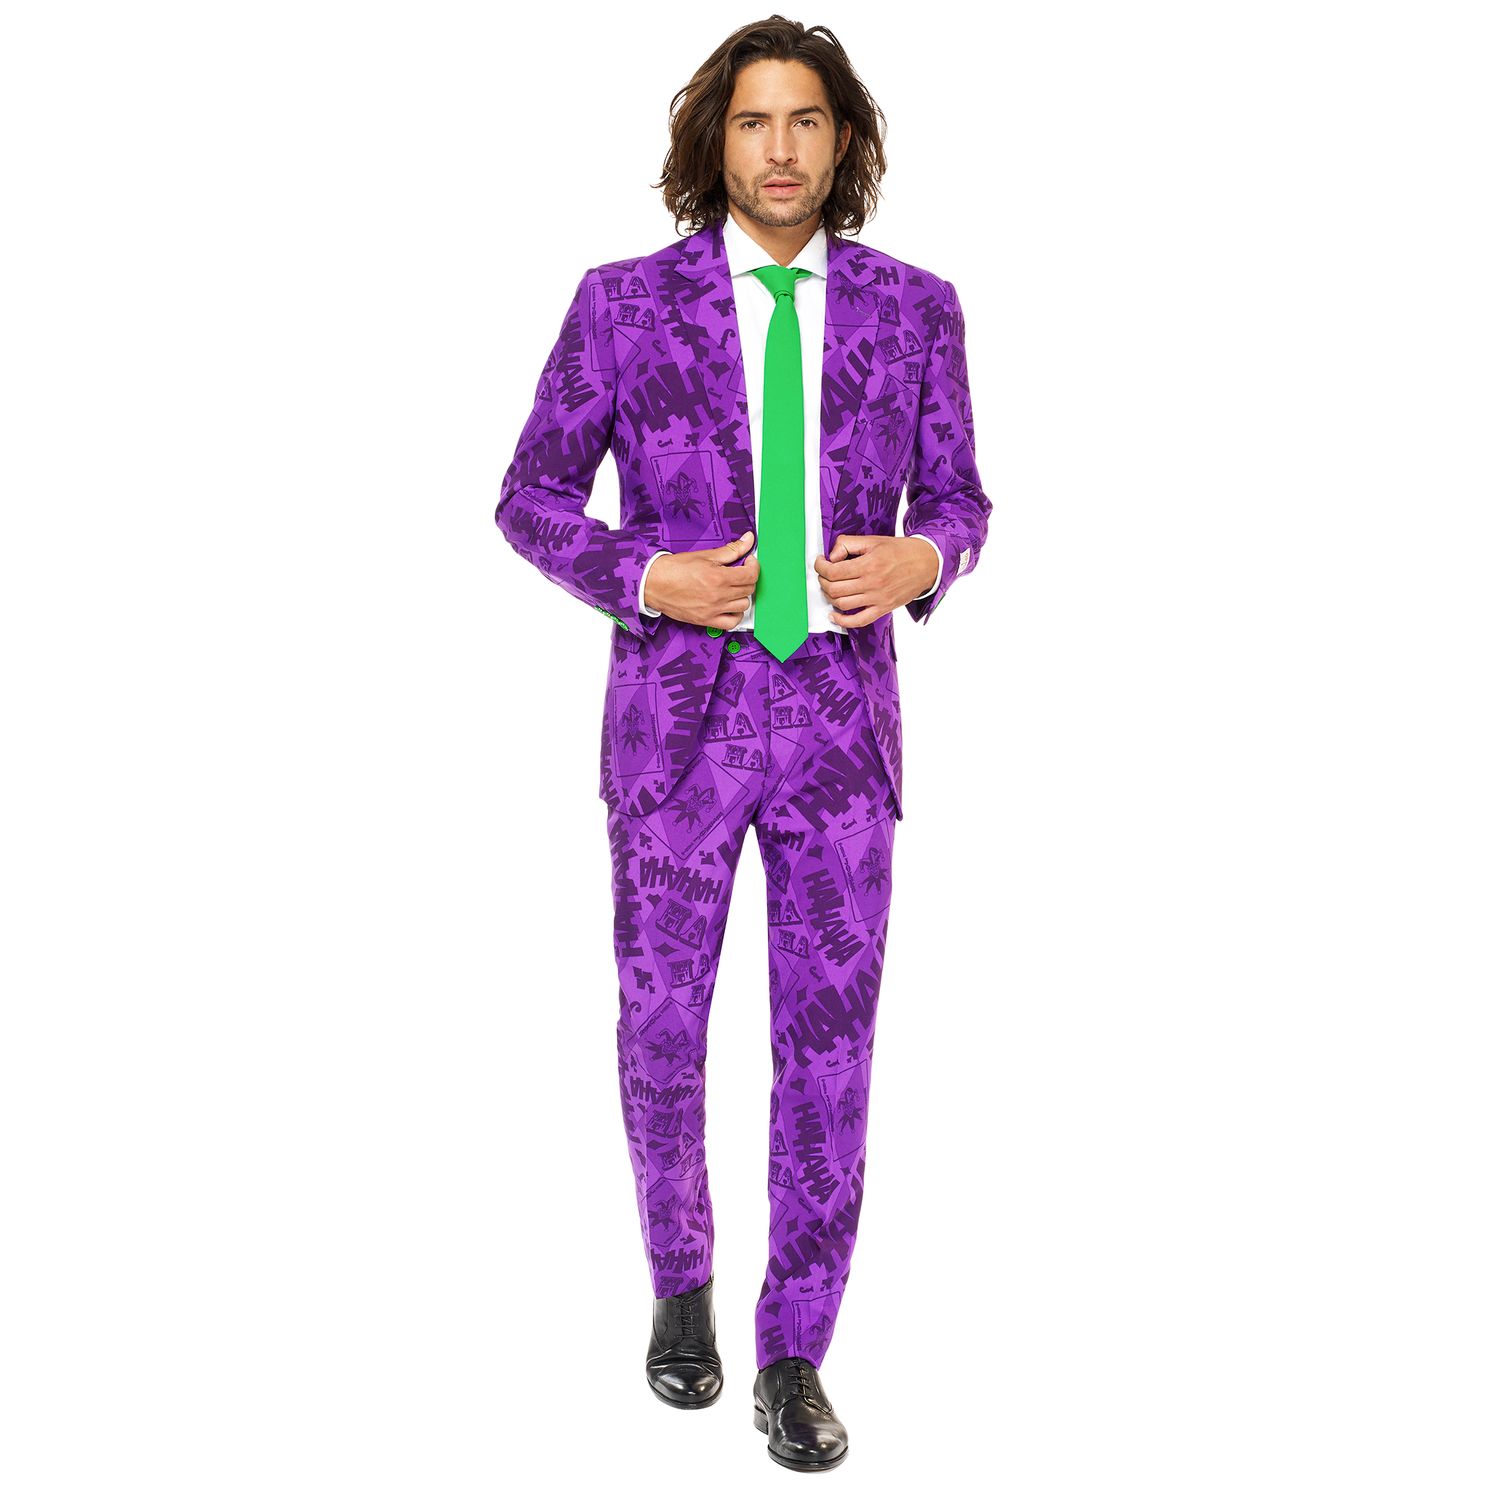 Мужской облегающий костюм и галстук The Joker OppoSuits, фиолетовый